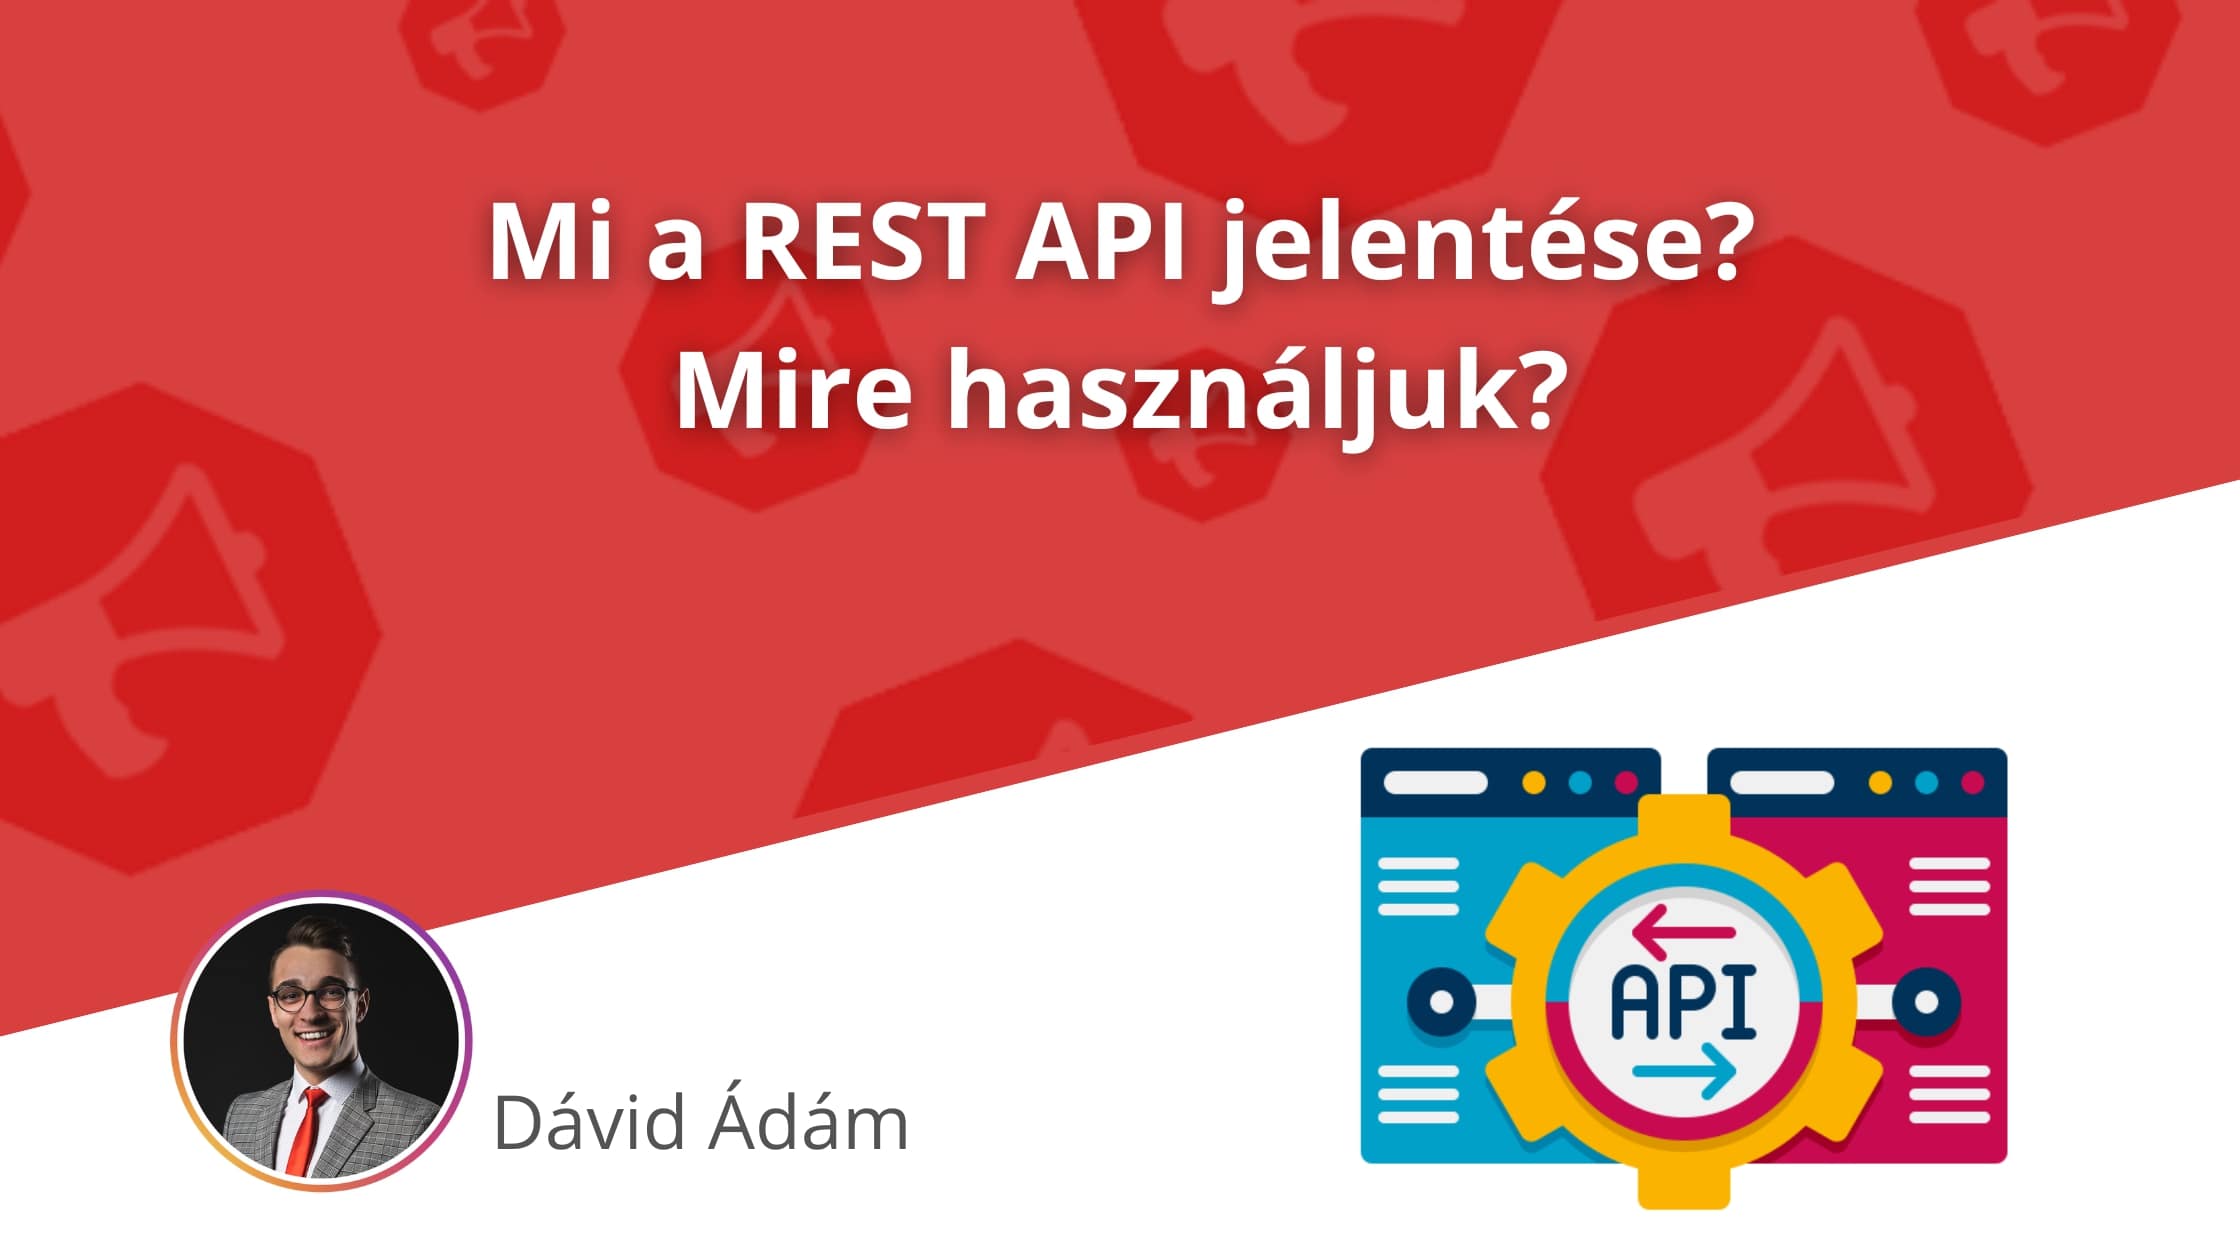 REST API jelentése